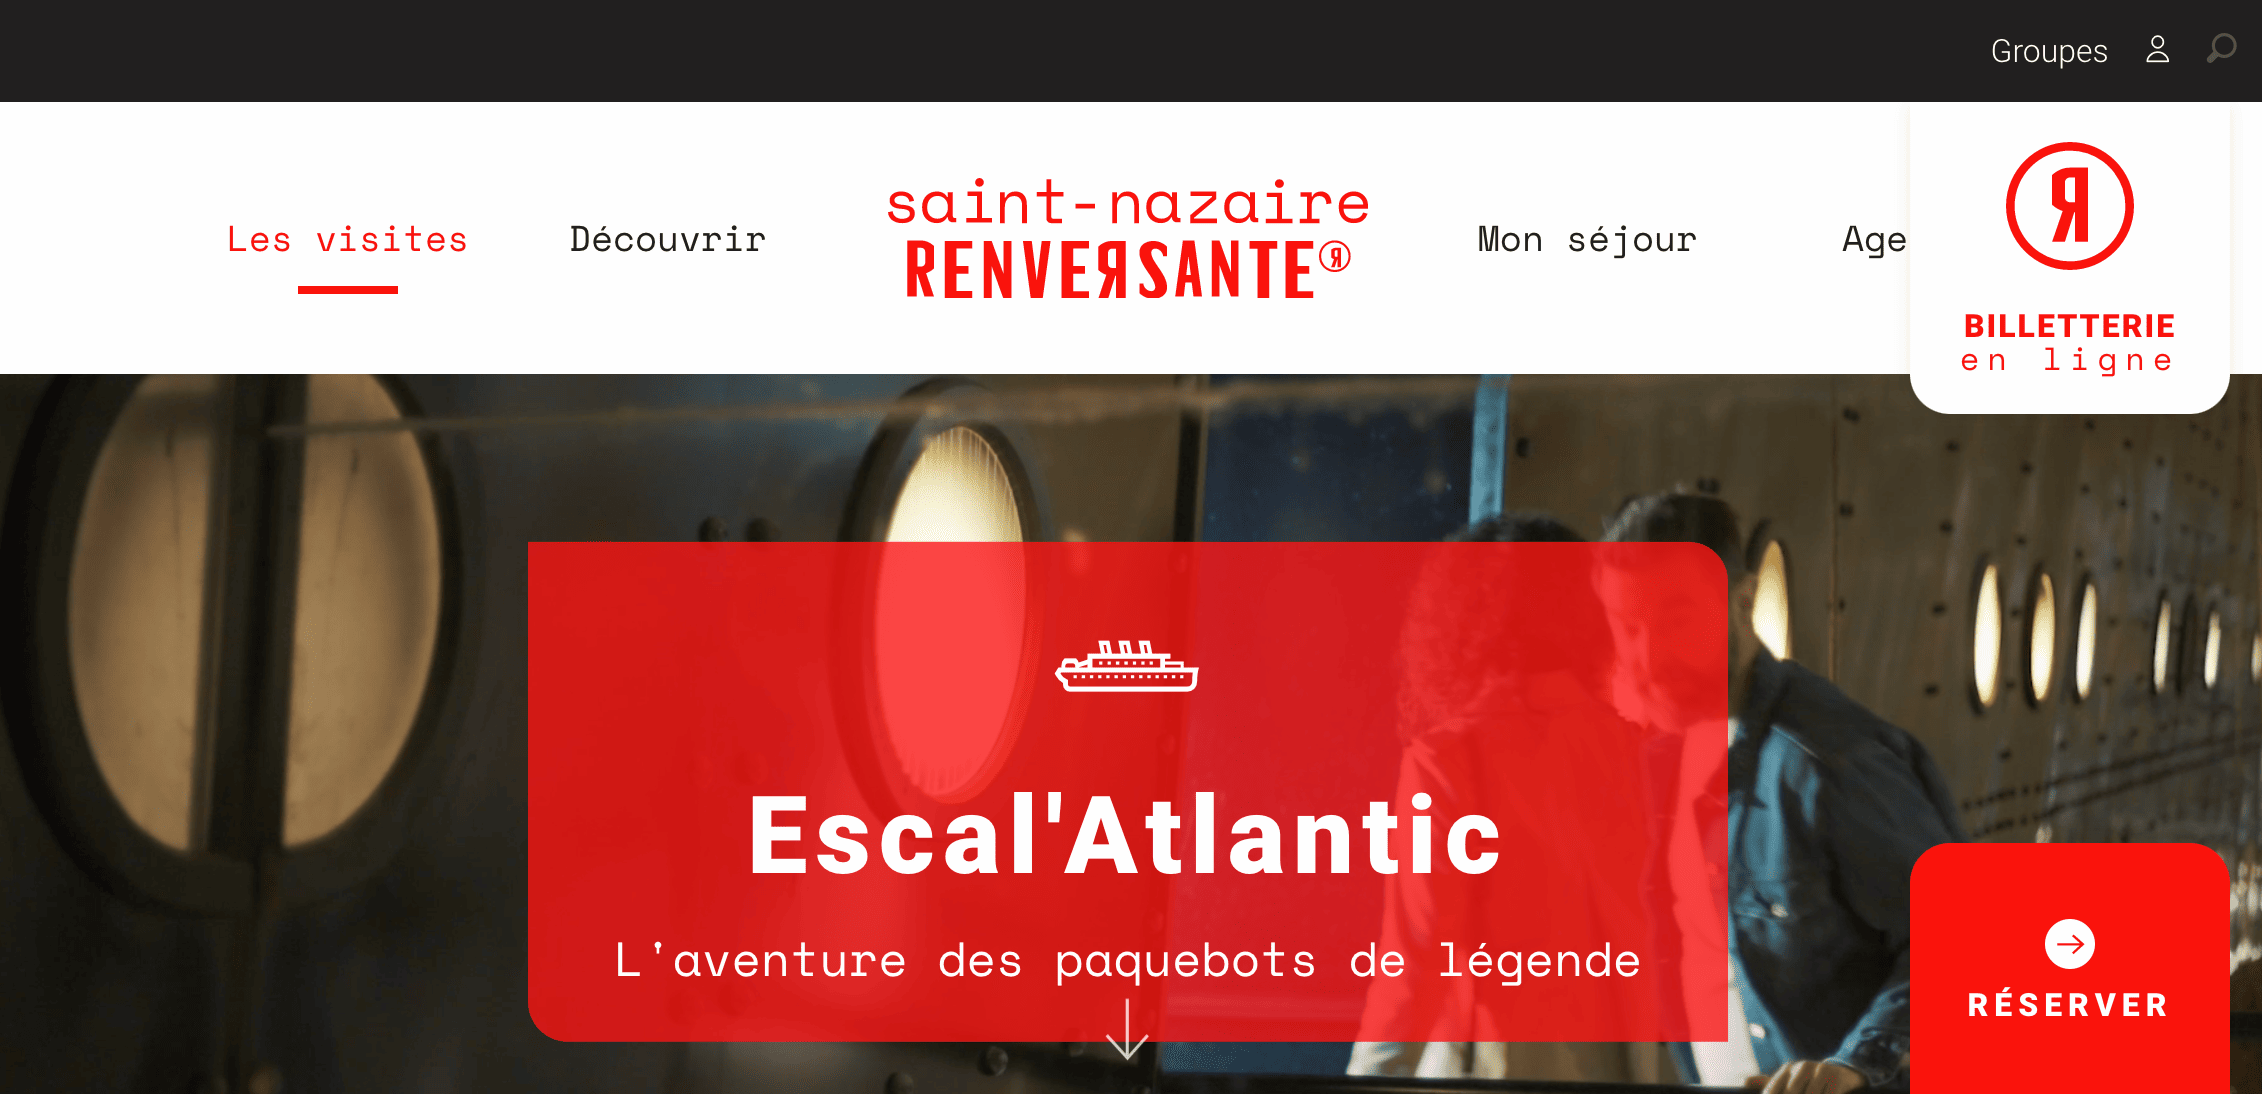 Musée Escal'Atlantic